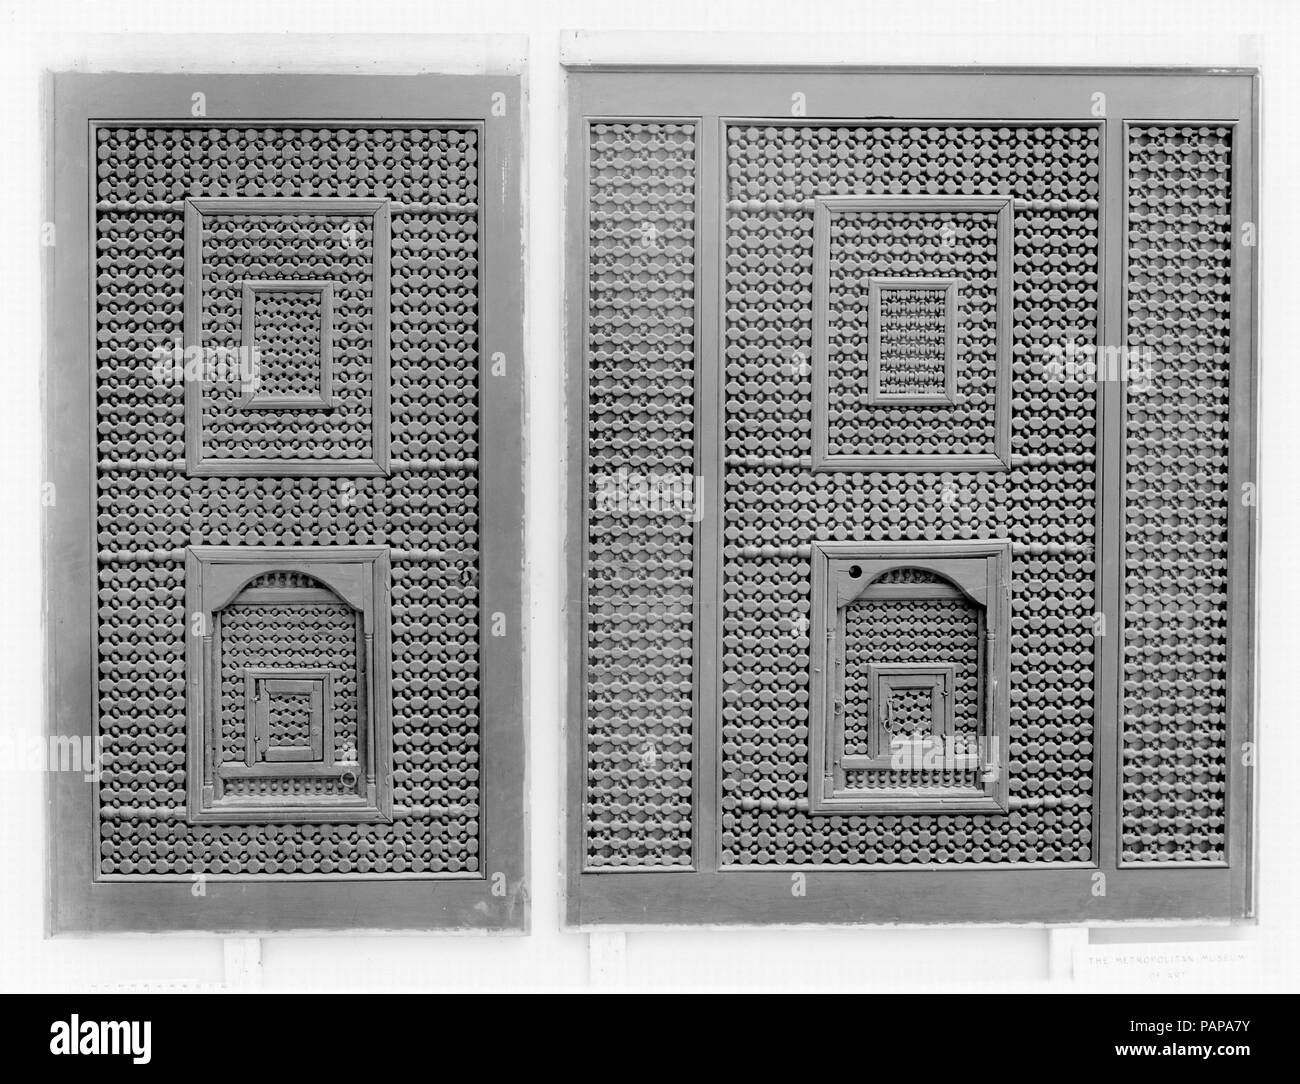 Schermo Mashrabiyya. Dimensioni: schermo una: H. 72 a. (182.9 cm) W. 36 a. (91,4 cm) D. 2. (5.1 cm) Schermo b: H. 72 a. (182.9 cm) W. 54 a. (137,2 cm) D. 2. (5.1 cm). Data: XV-XVI secolo. Mashrabiyya, o finestra in legno di schermi, di solito hanno piccole finestre da cui lo spettatore può vedere passanti senza essere visto o di condurre una conversazione con quelli al di fuori. In questi grandi mashrabiyya pannelli dello schermo un esempio di tali finestre possono essere visto tenendo un ferro di cavallo o arco di curva di forma. Museo: Metropolitan Museum of Art di New York, Stati Uniti d'America. Foto Stock